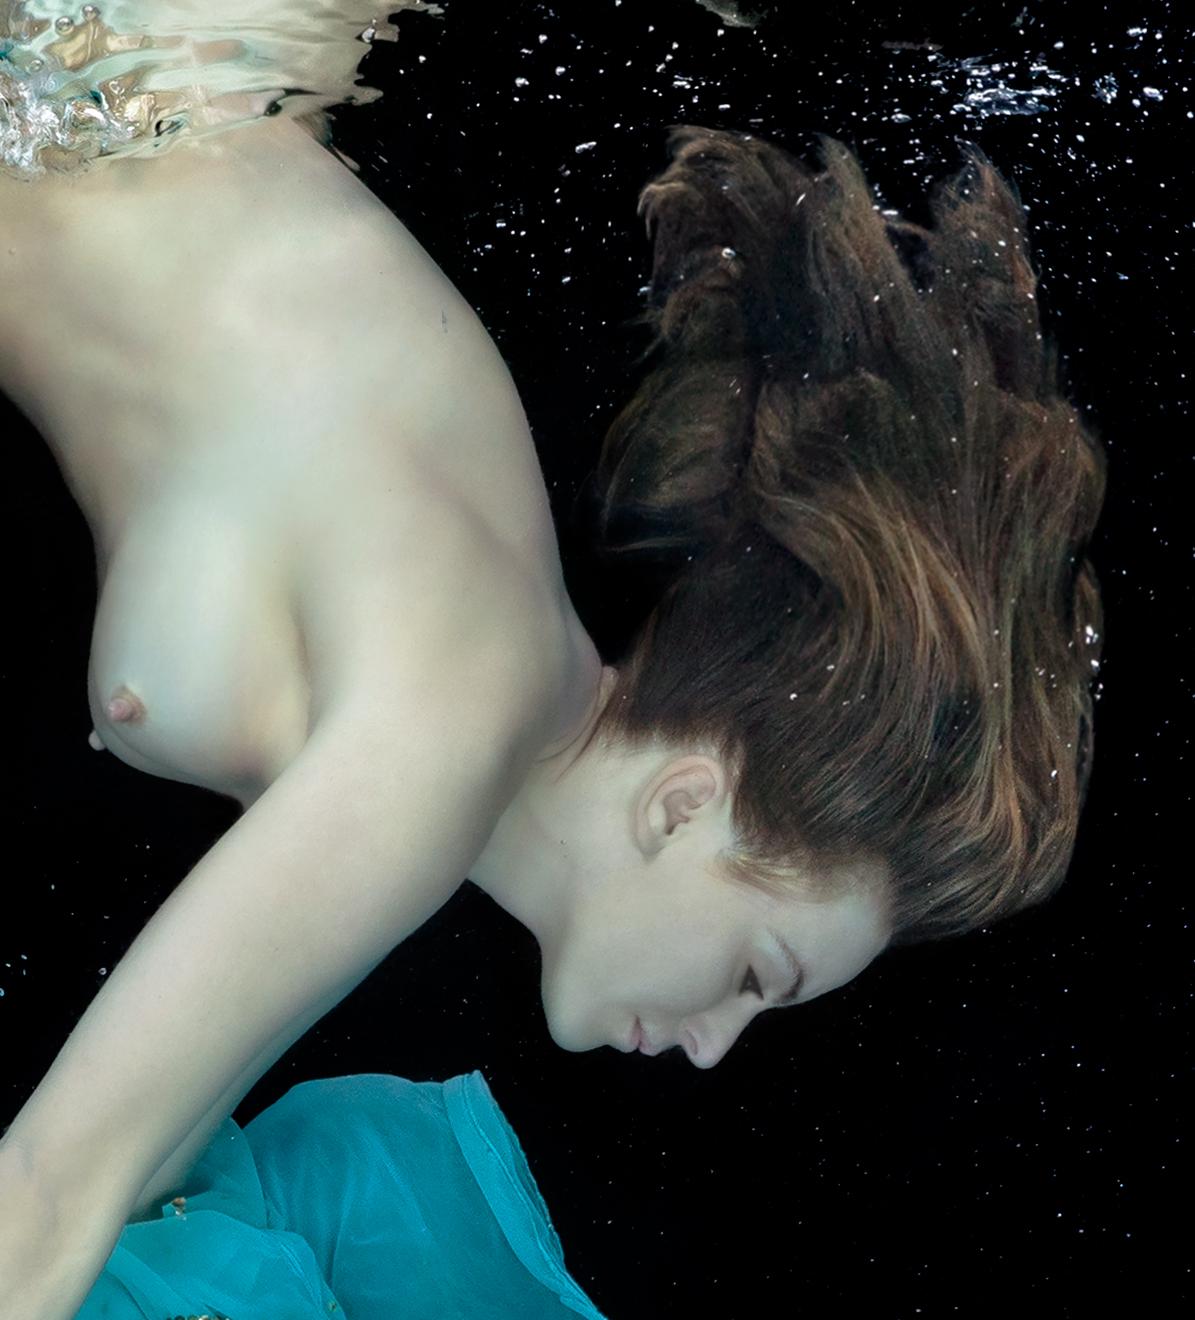 Ein Unterwasserfoto einer nackten jungen Frau, die neben dem leuchtend türkisfarbenen Kleid taucht, das sie gerade ausgezogen hat. 

Vom Künstler signierter Originaldruck in Galeriequalität. 
Digitaler Pigmentdruck für die Archivierung.